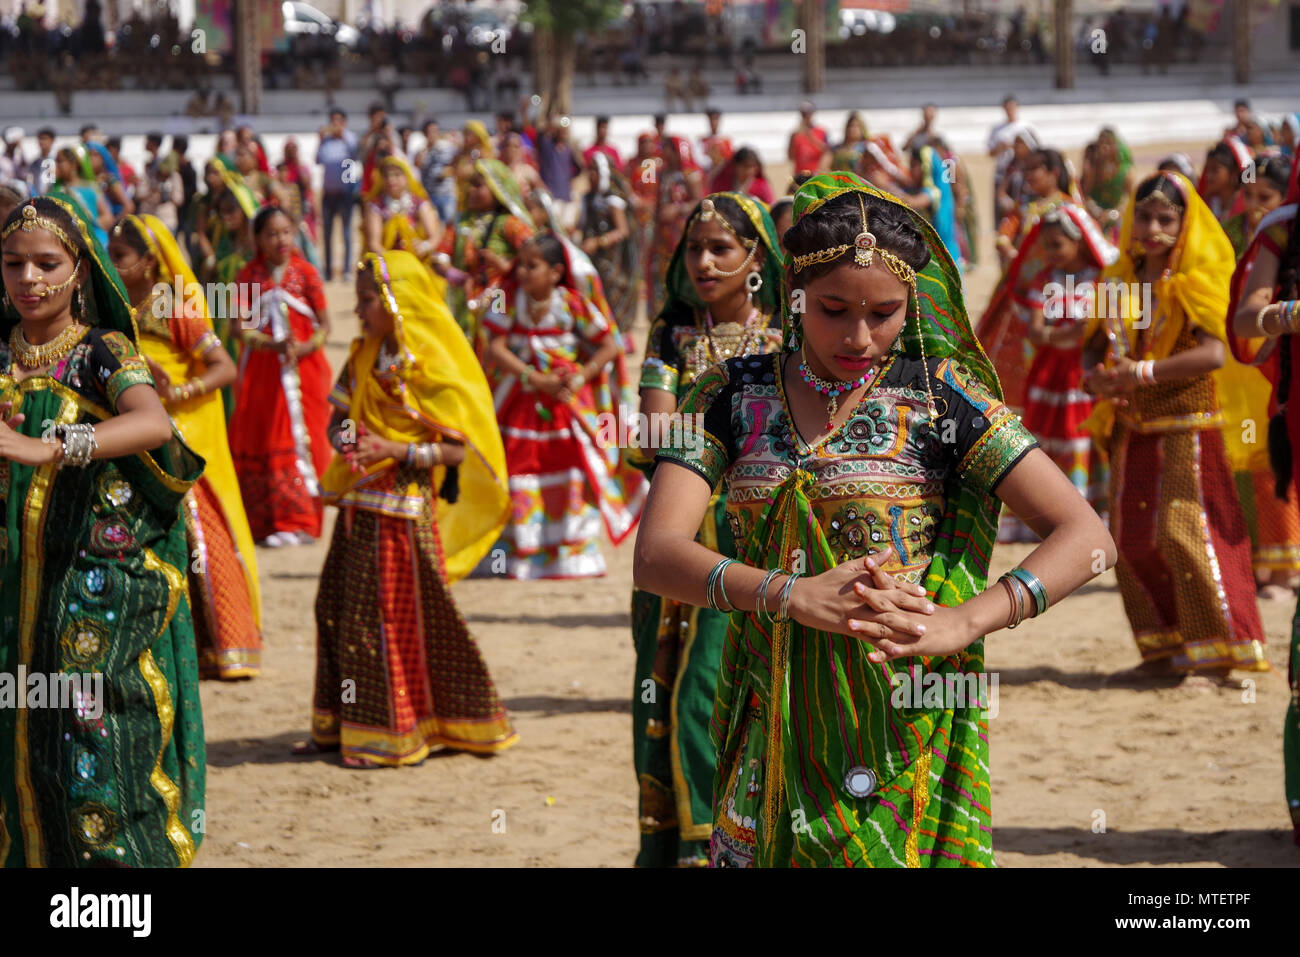 Portez les filles non identifiés de la danse ethnique traditionnel à Pushkar Mela au Rajasthan, Inde Banque D'Images